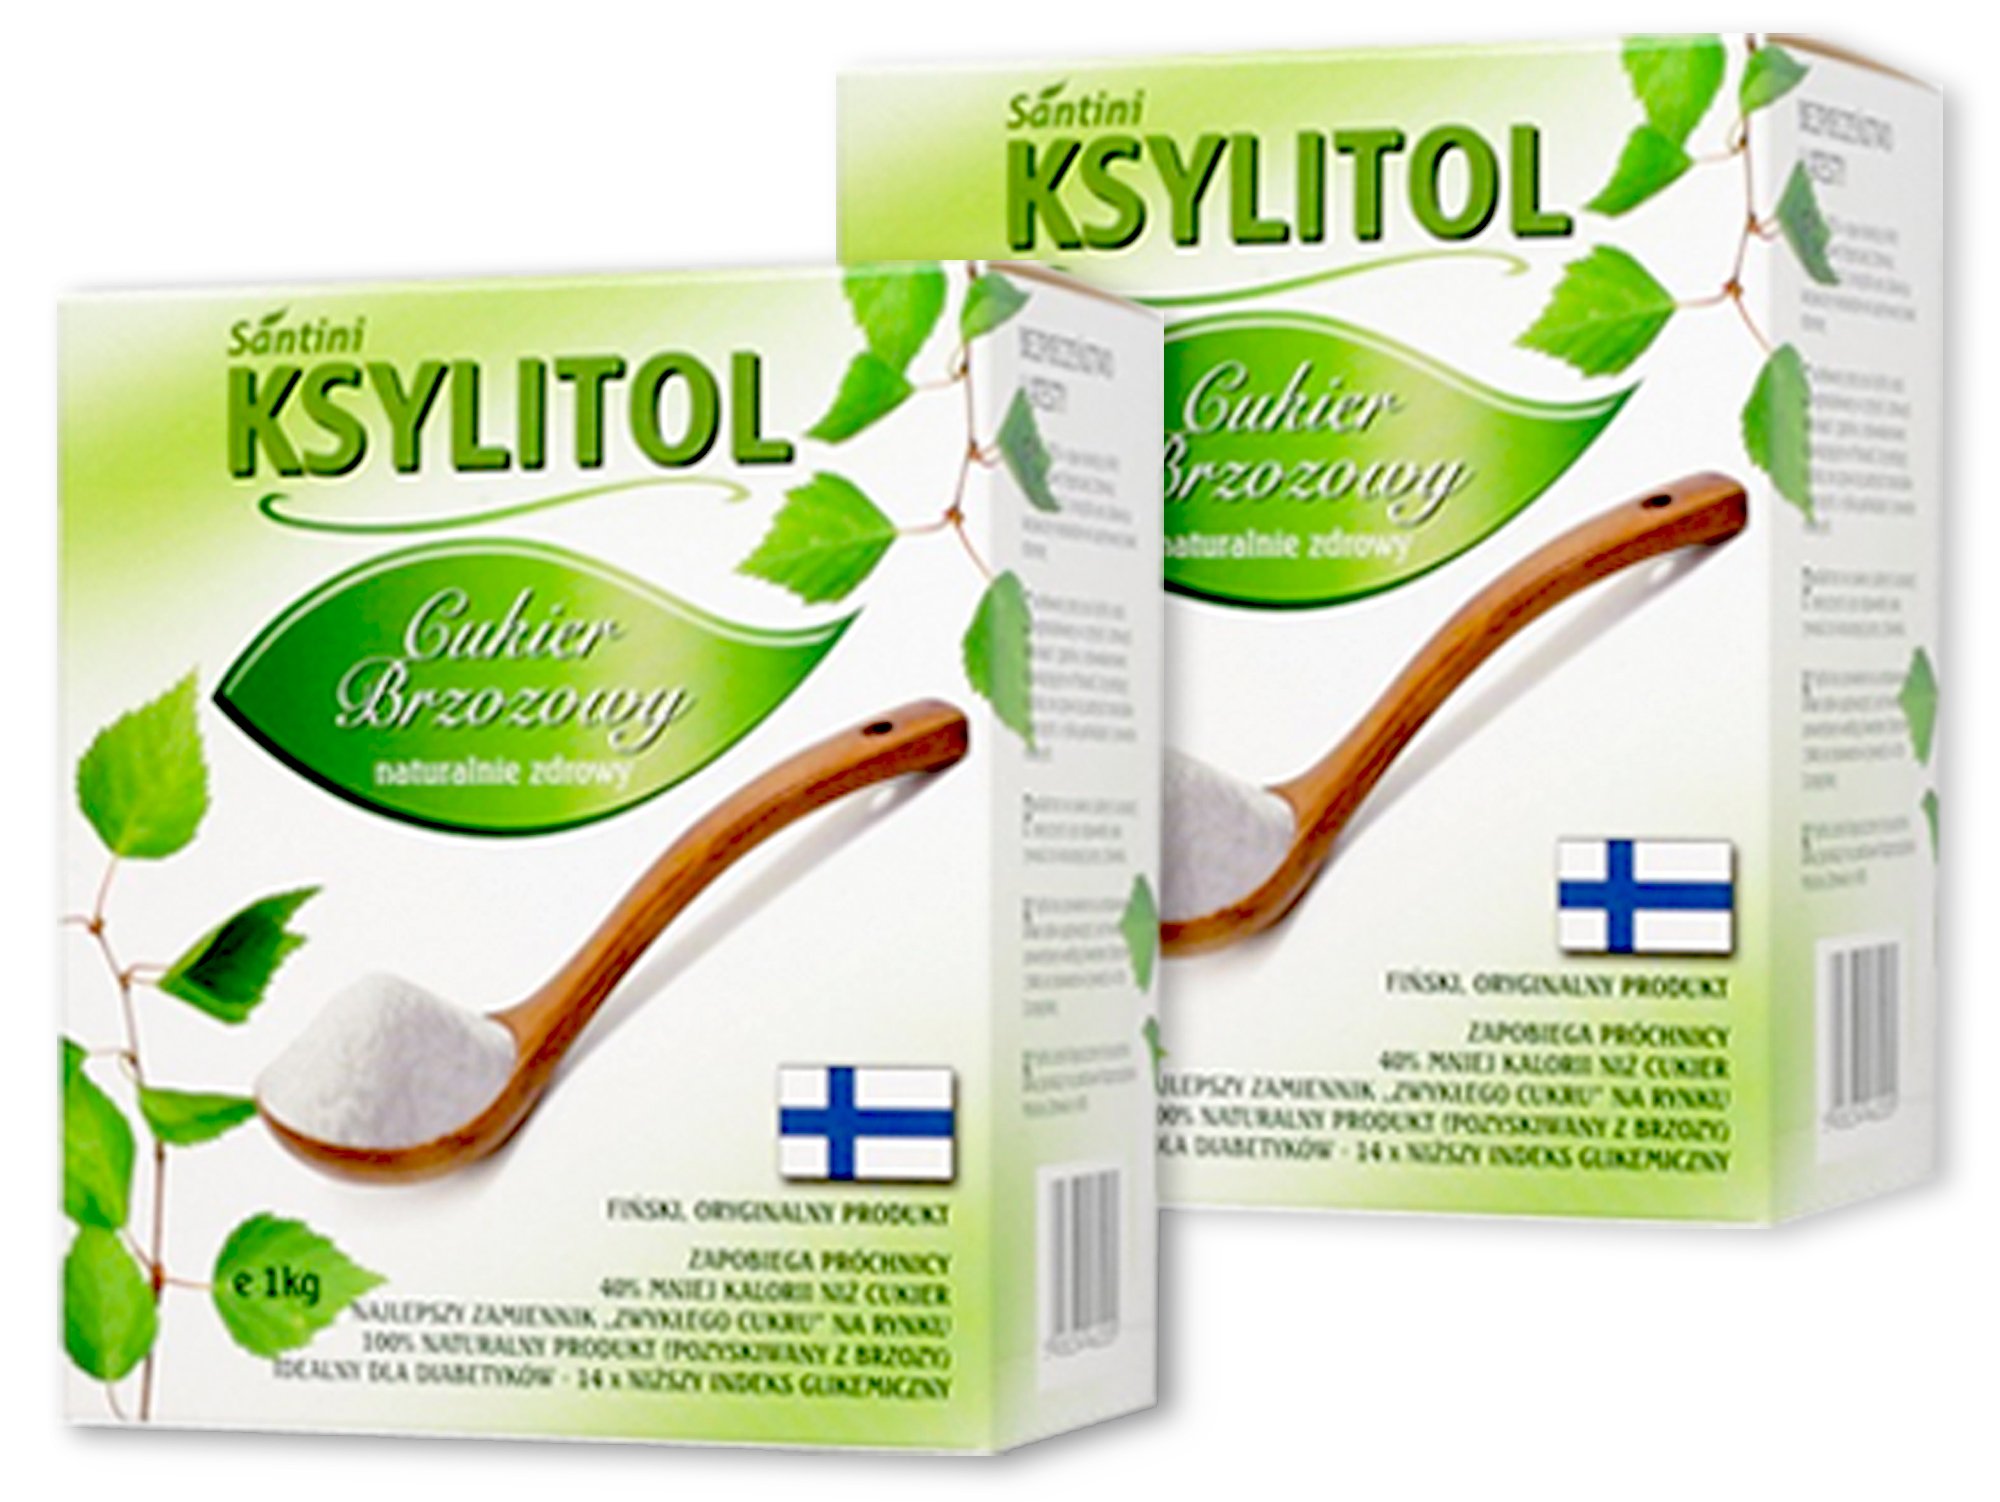 XYLITOL 2 kg fínsky 100% breza cukru, xylitol